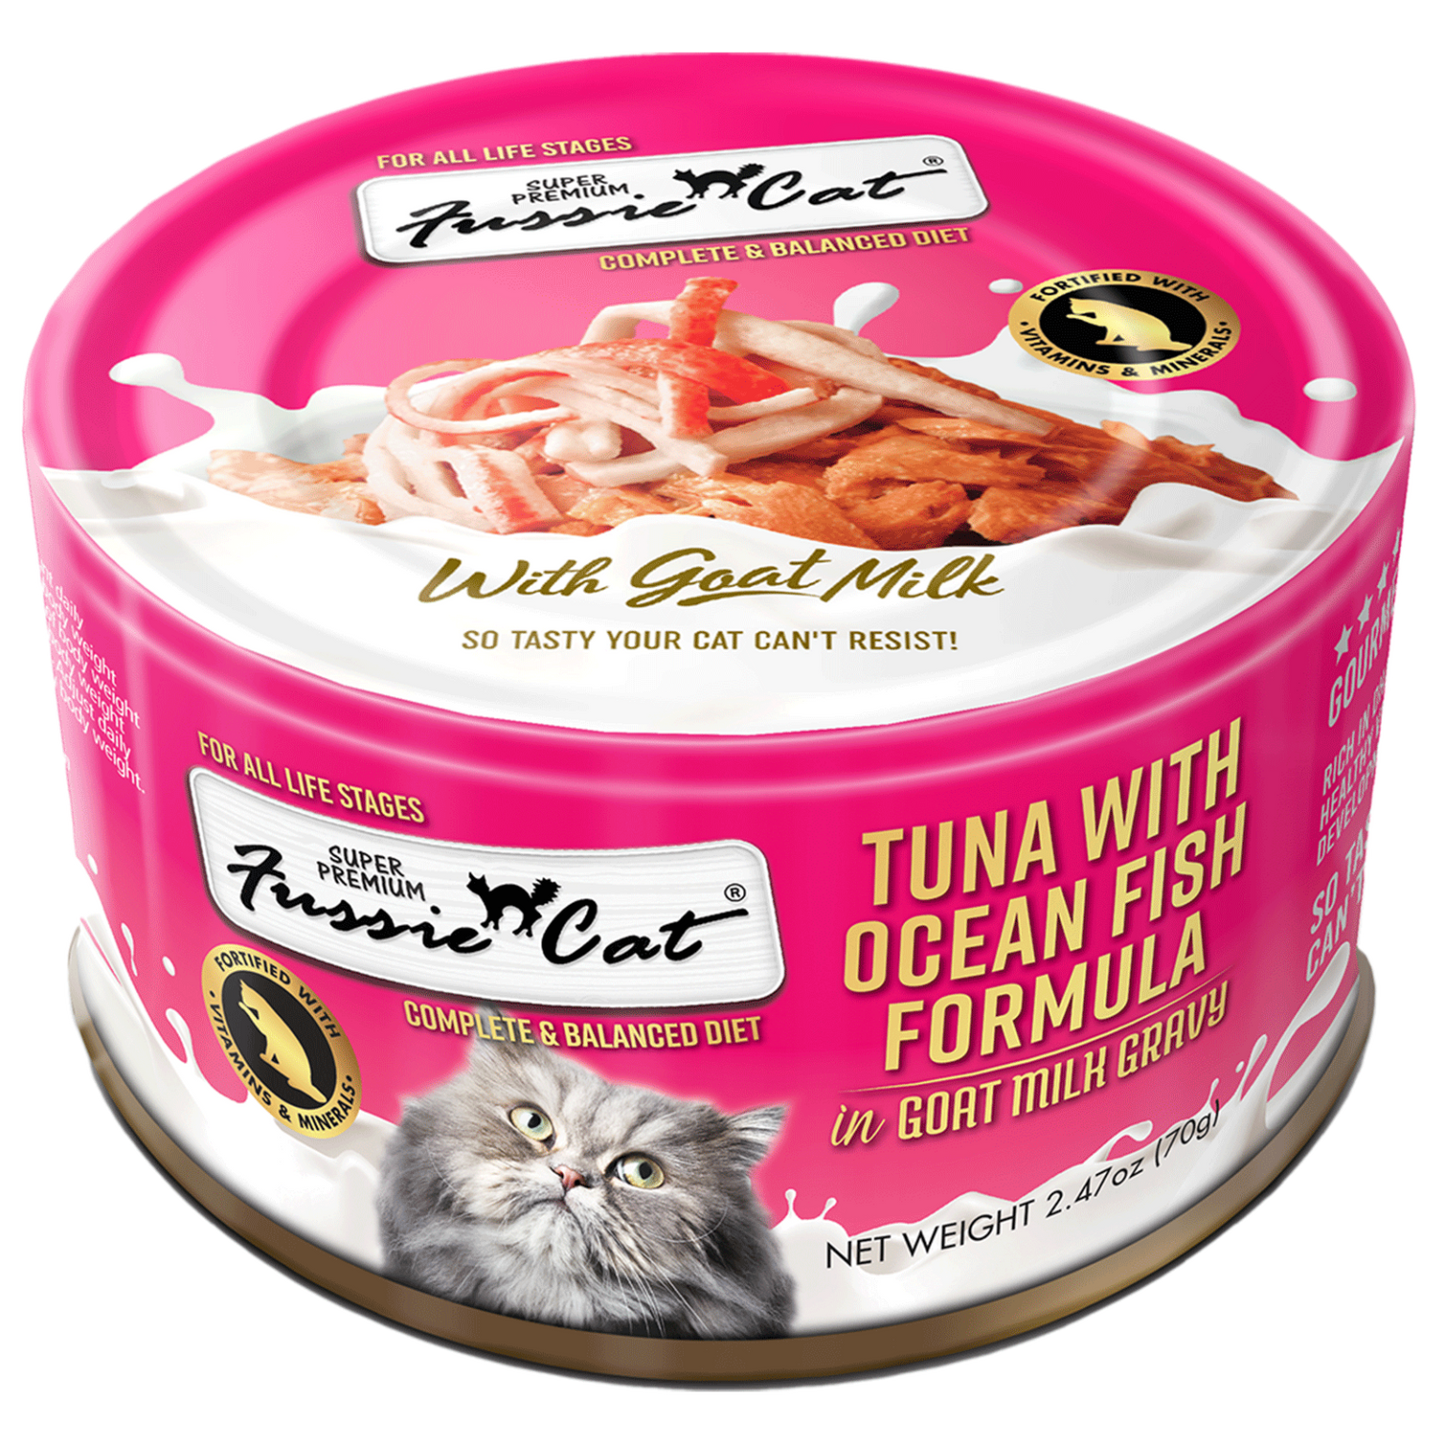 Fussie Cat Super Premium Tuna with Ocean Fish in Goat Milk Gravy